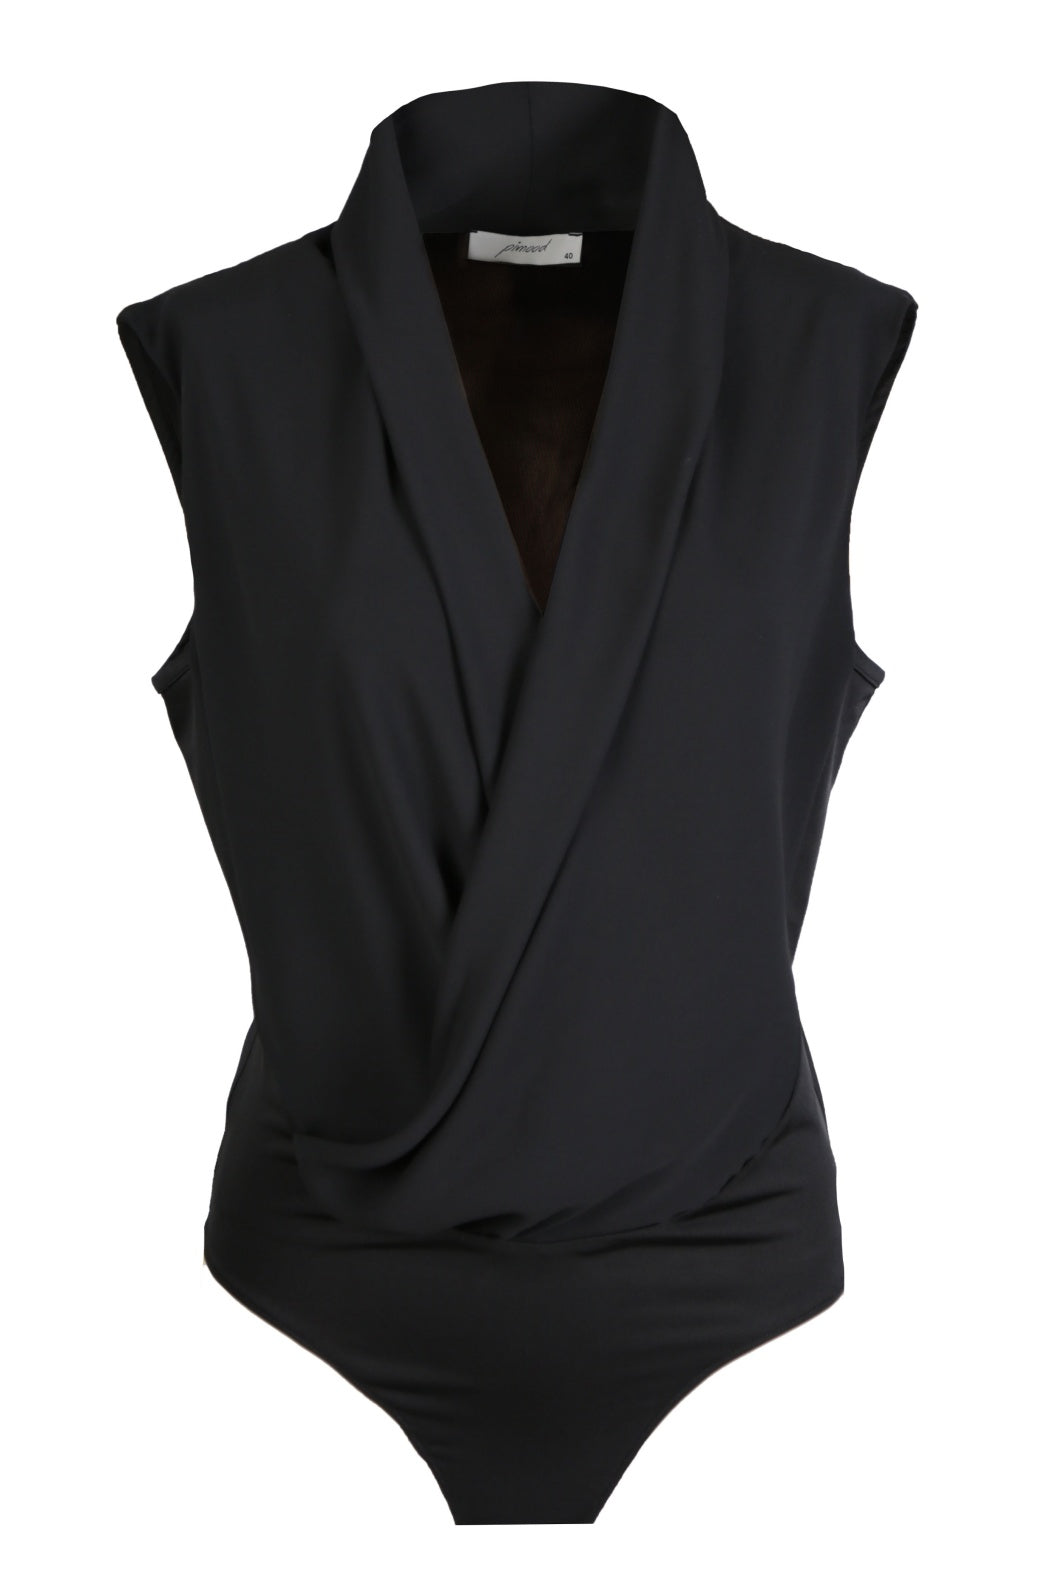 Estee Black Shawl Collar Sleeveless Bodysuit